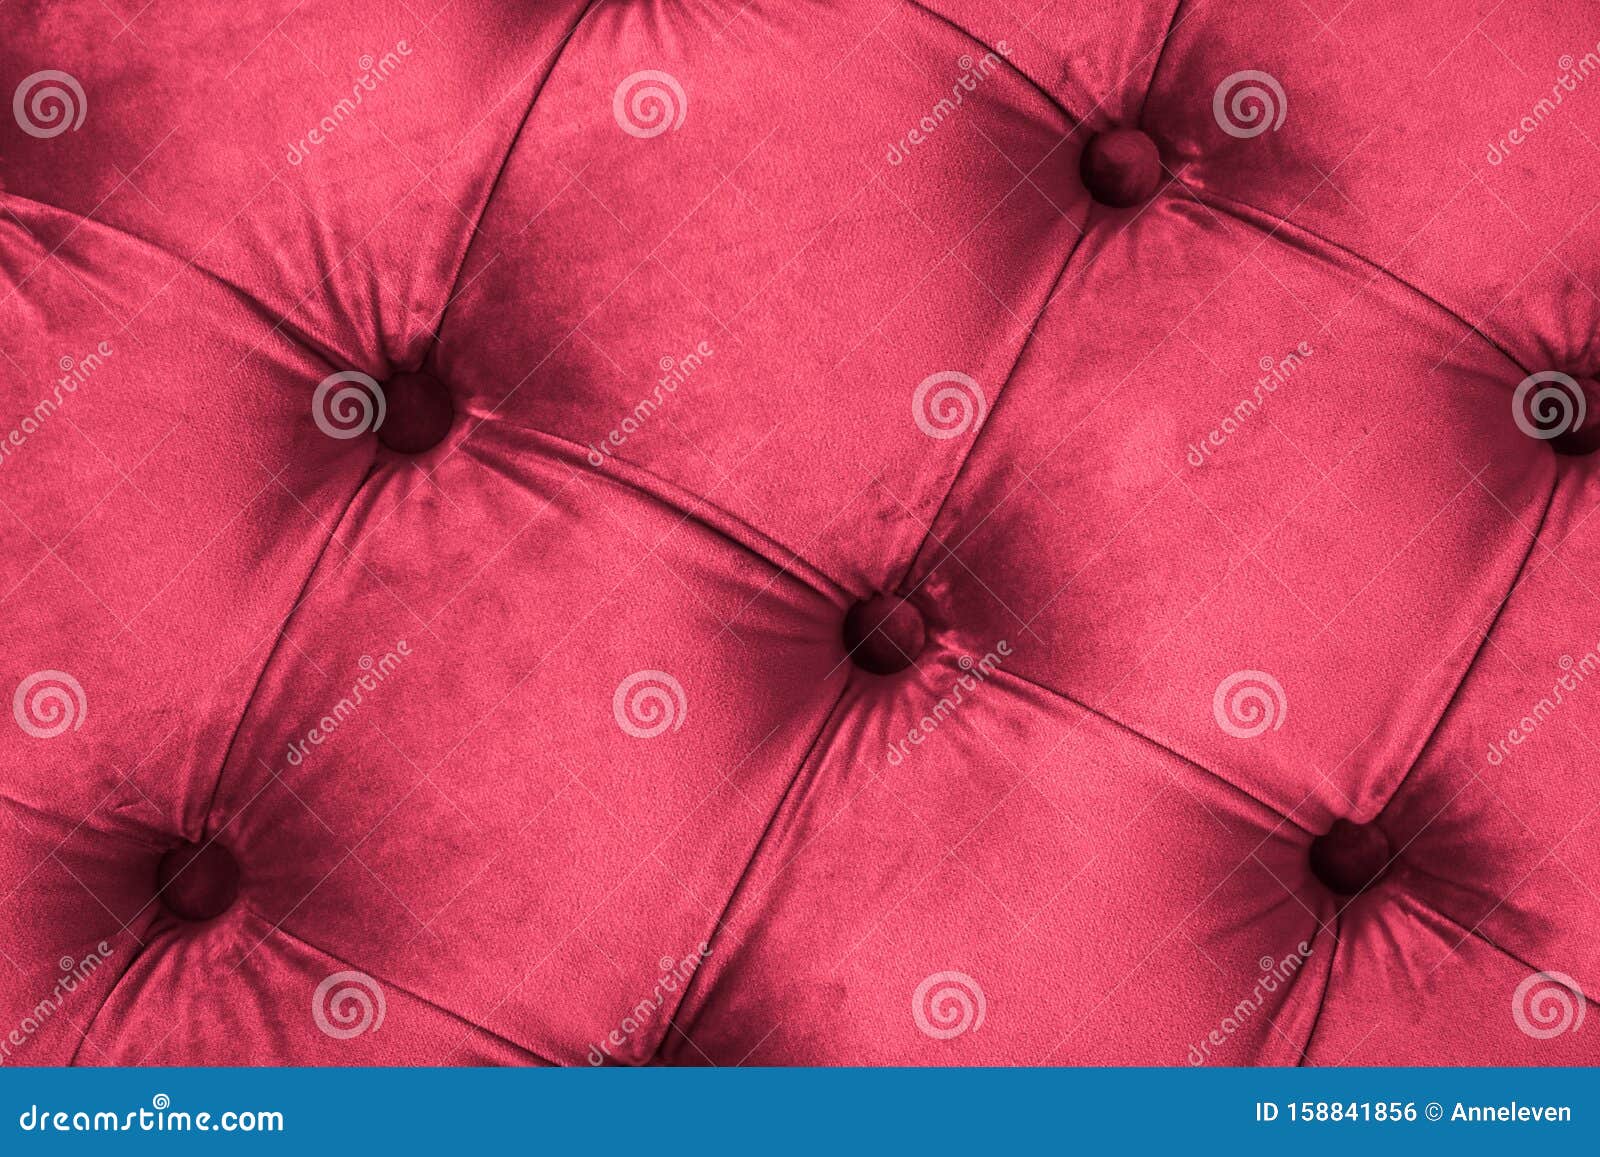 Chiếc sofa bọc nệm màu hồng sang trọng với nút bấm sẽ khiến bạn cảm thấy như đang ngồi trong một phòng khách sạn sang trọng. Với màu sắc tươi sáng và thiết kế đẳng cấp, chiếc sofa này sẽ trở thành điểm nhấn trong mọi không gian nội thất. Hãy xem hình ảnh để cảm nhận sự sang trọng và đẳng cấp của sản phẩm này.